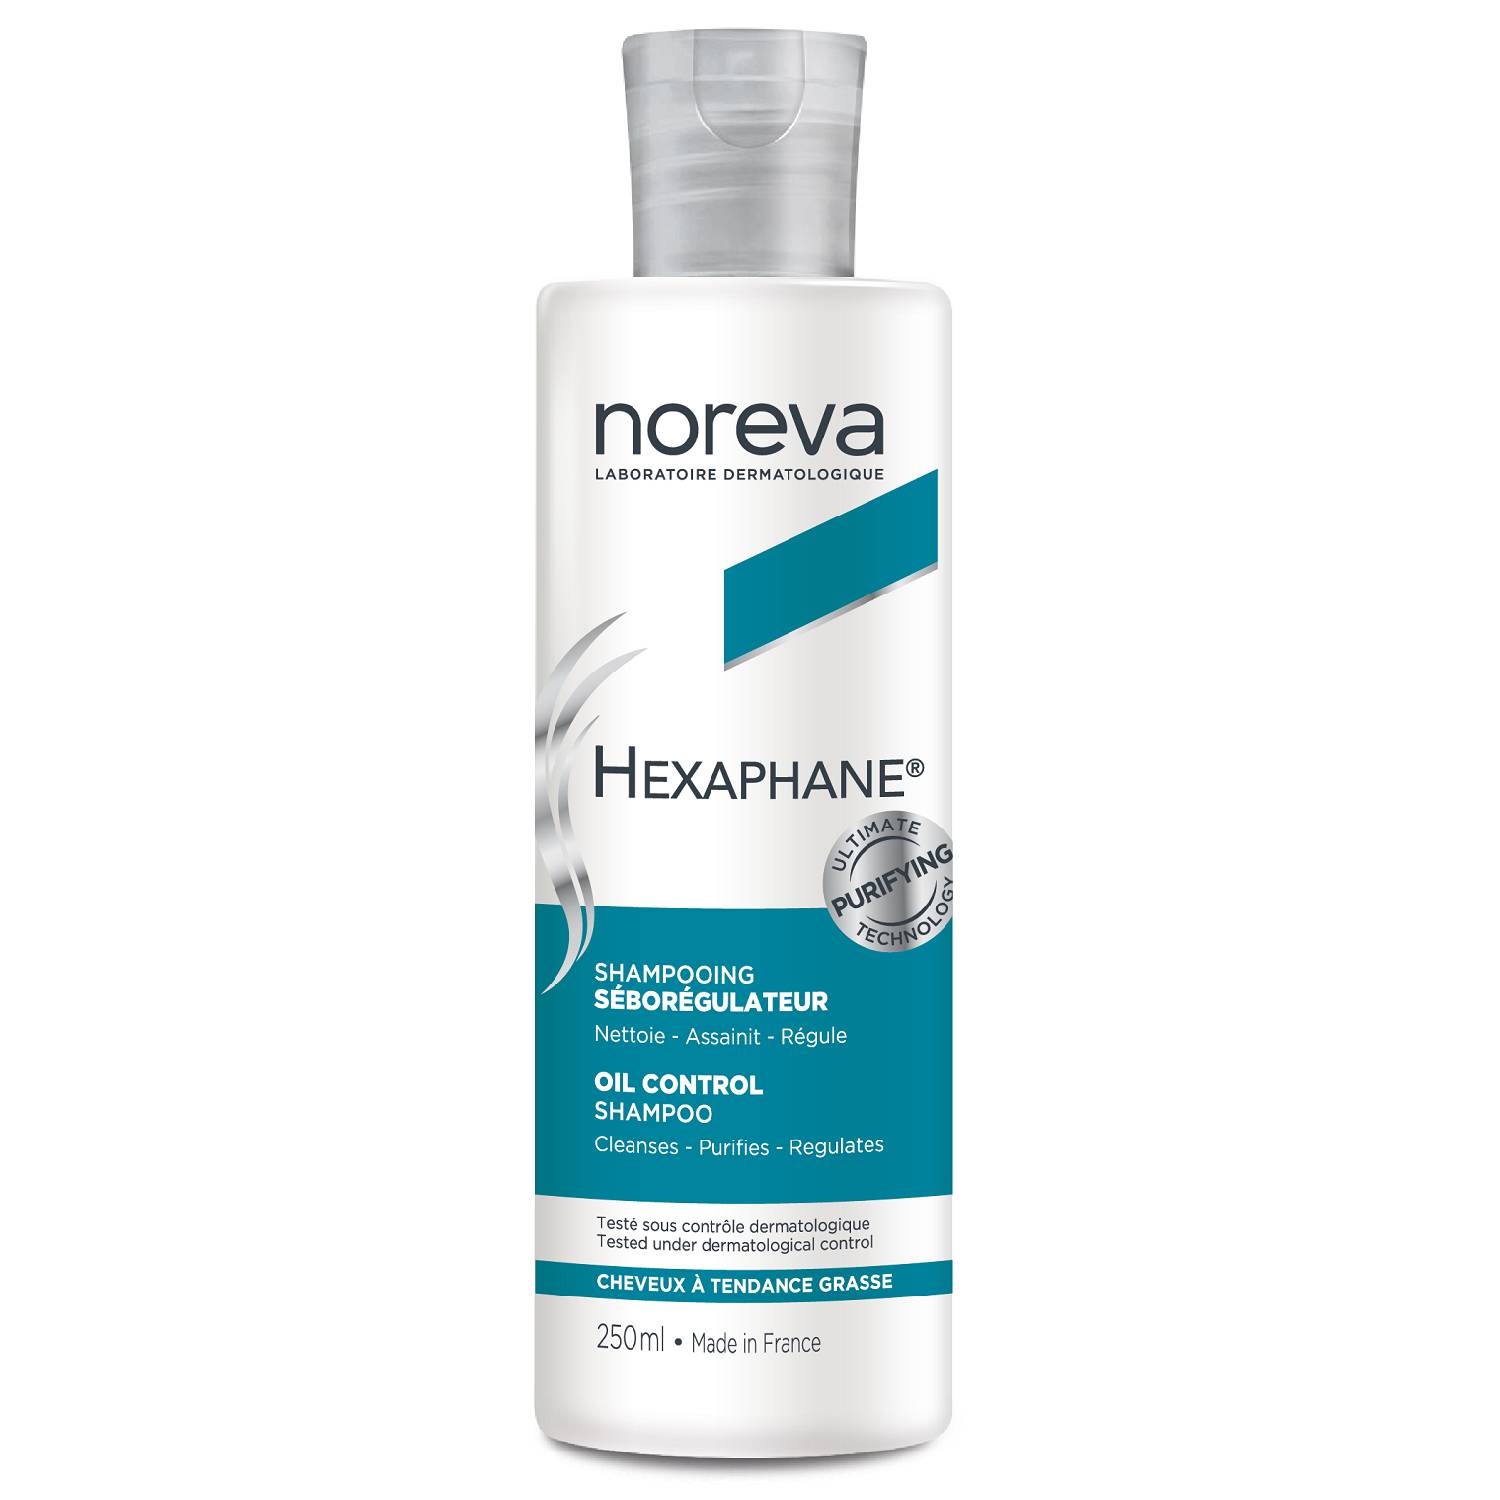 noreva шампунь для жирных волос oil control shampoo 250 мл noreva hexaphane Noreva Шампунь для жирных волос Oil Control Shampoo, 250 мл (Noreva, Hexaphane)